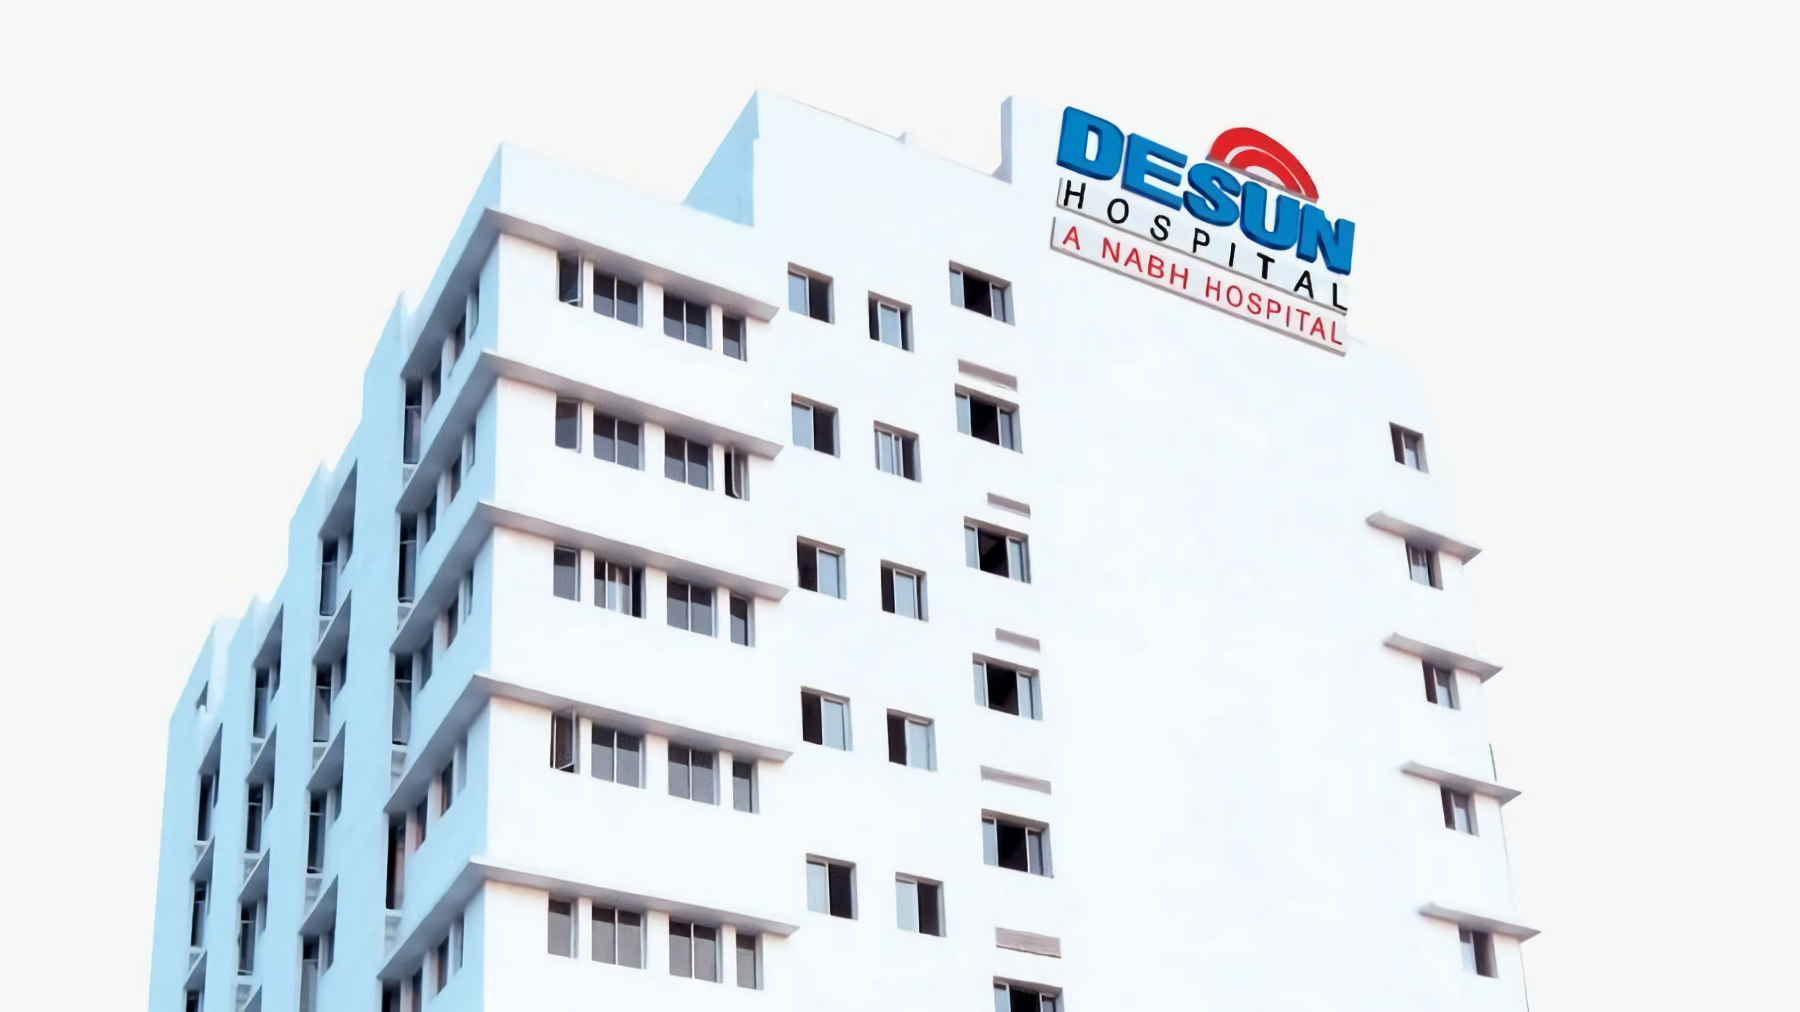 Desun Hospital photo